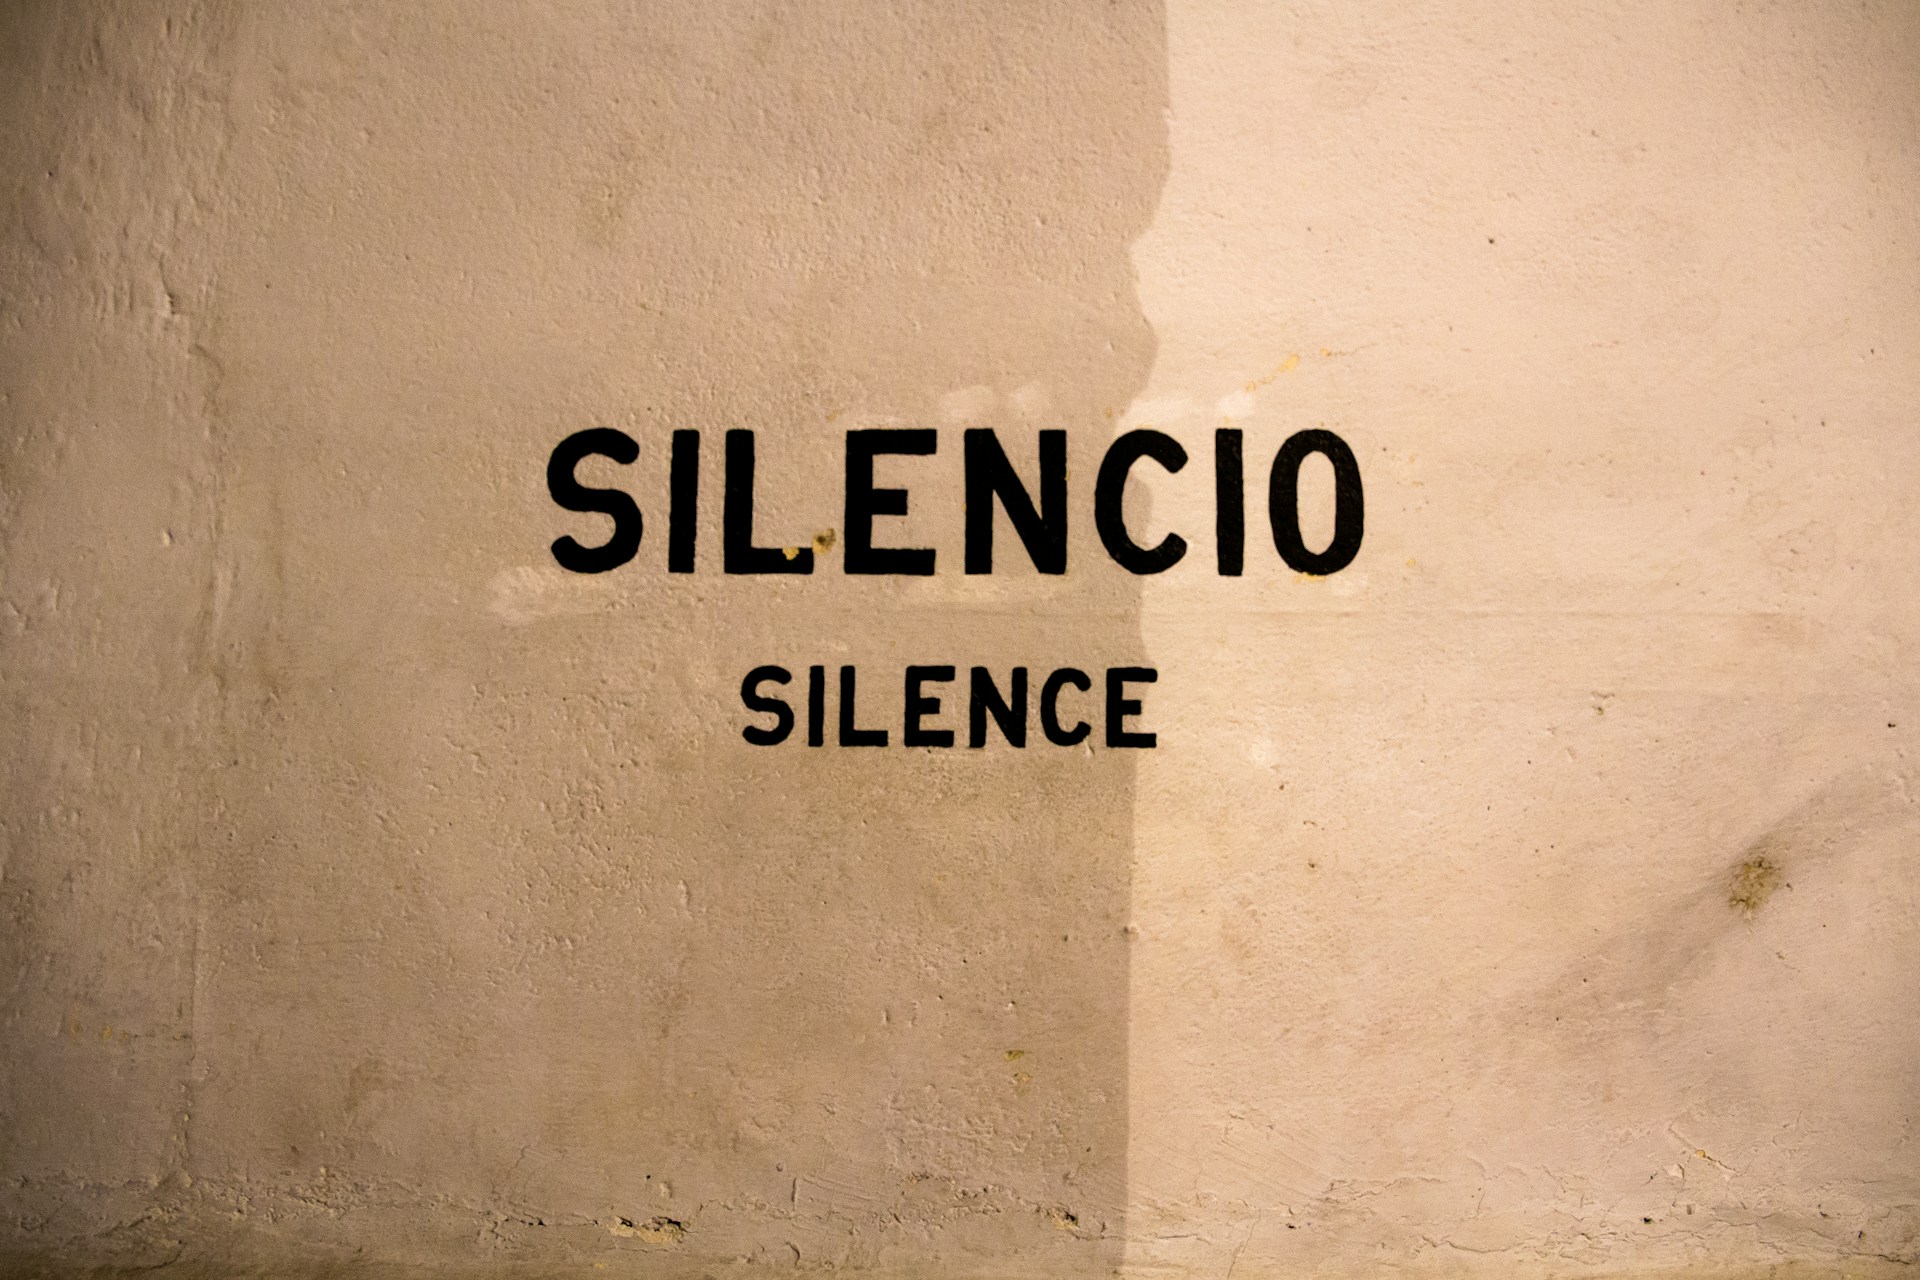 Il valore del silenzio